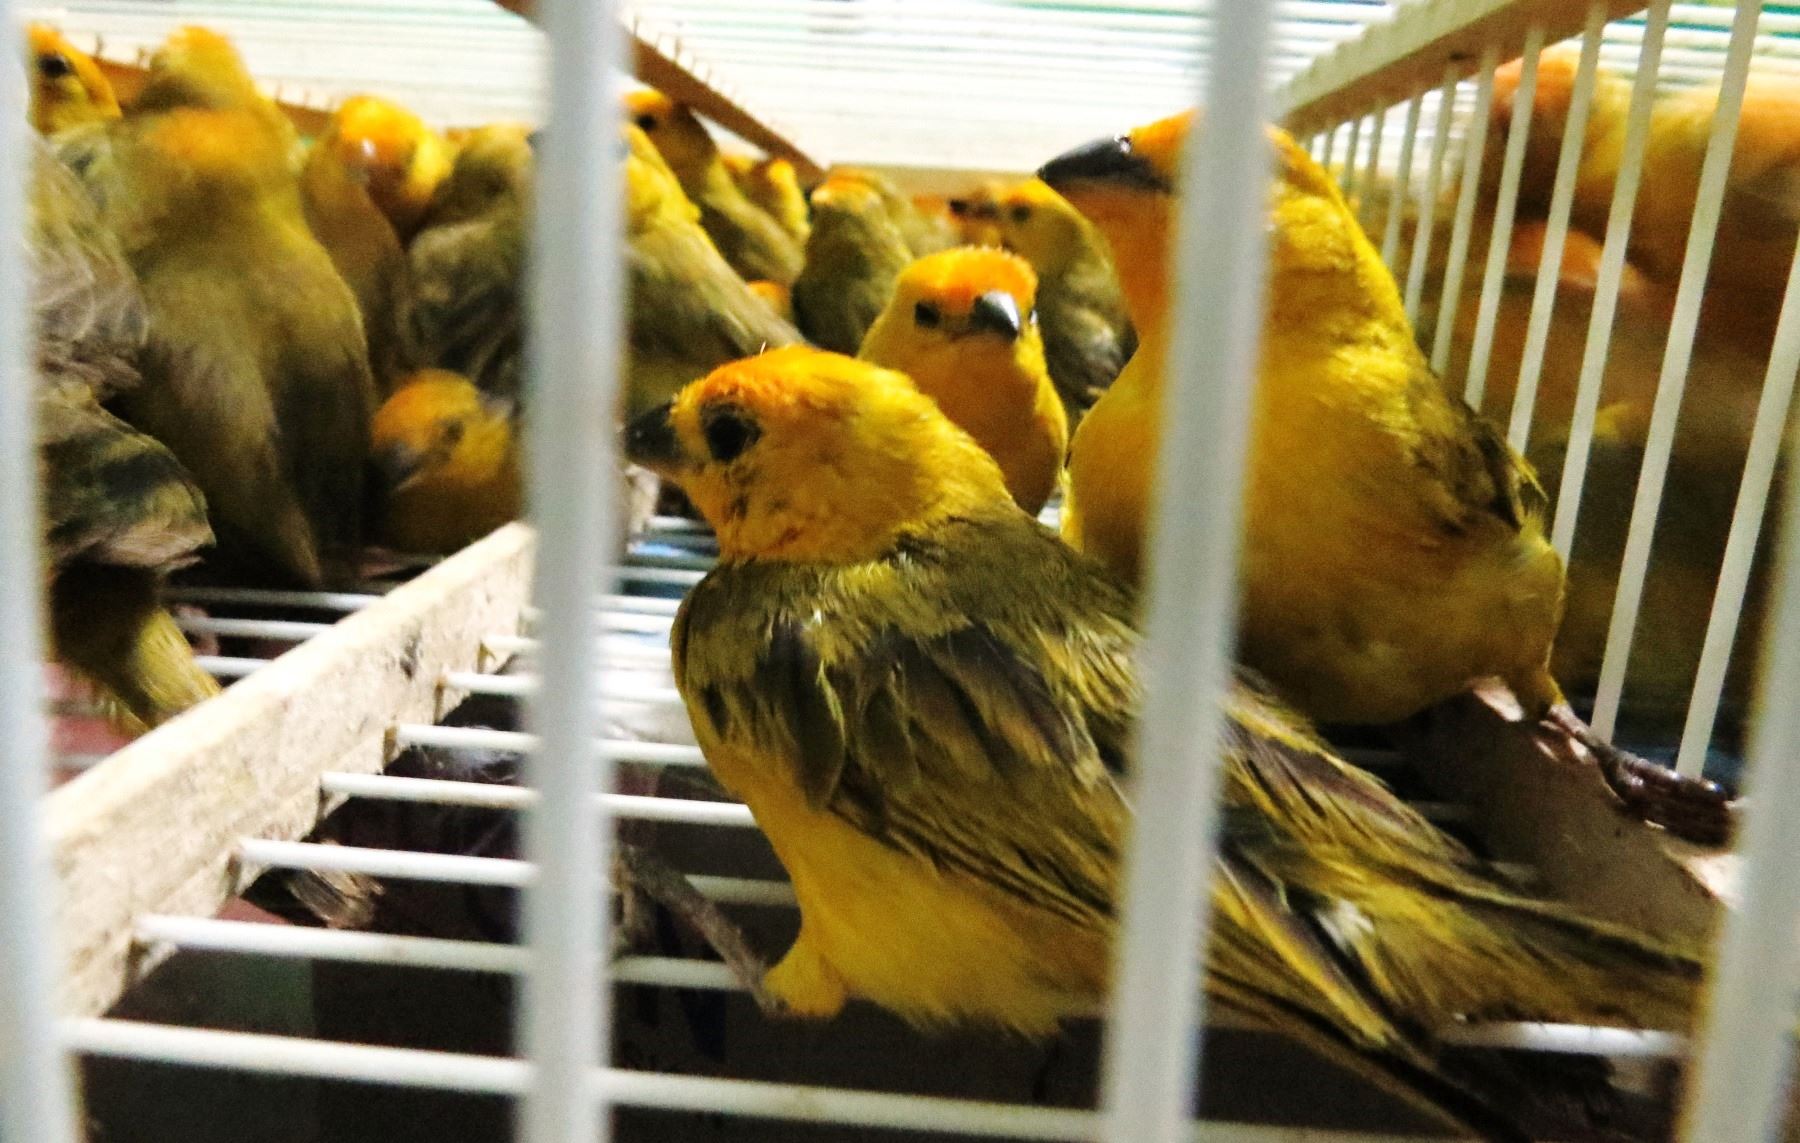 120 aves silvestres, de la especie botón de oro fueron rescatadas de manos de traficantes ilegales en Chiclayo. ANDINA